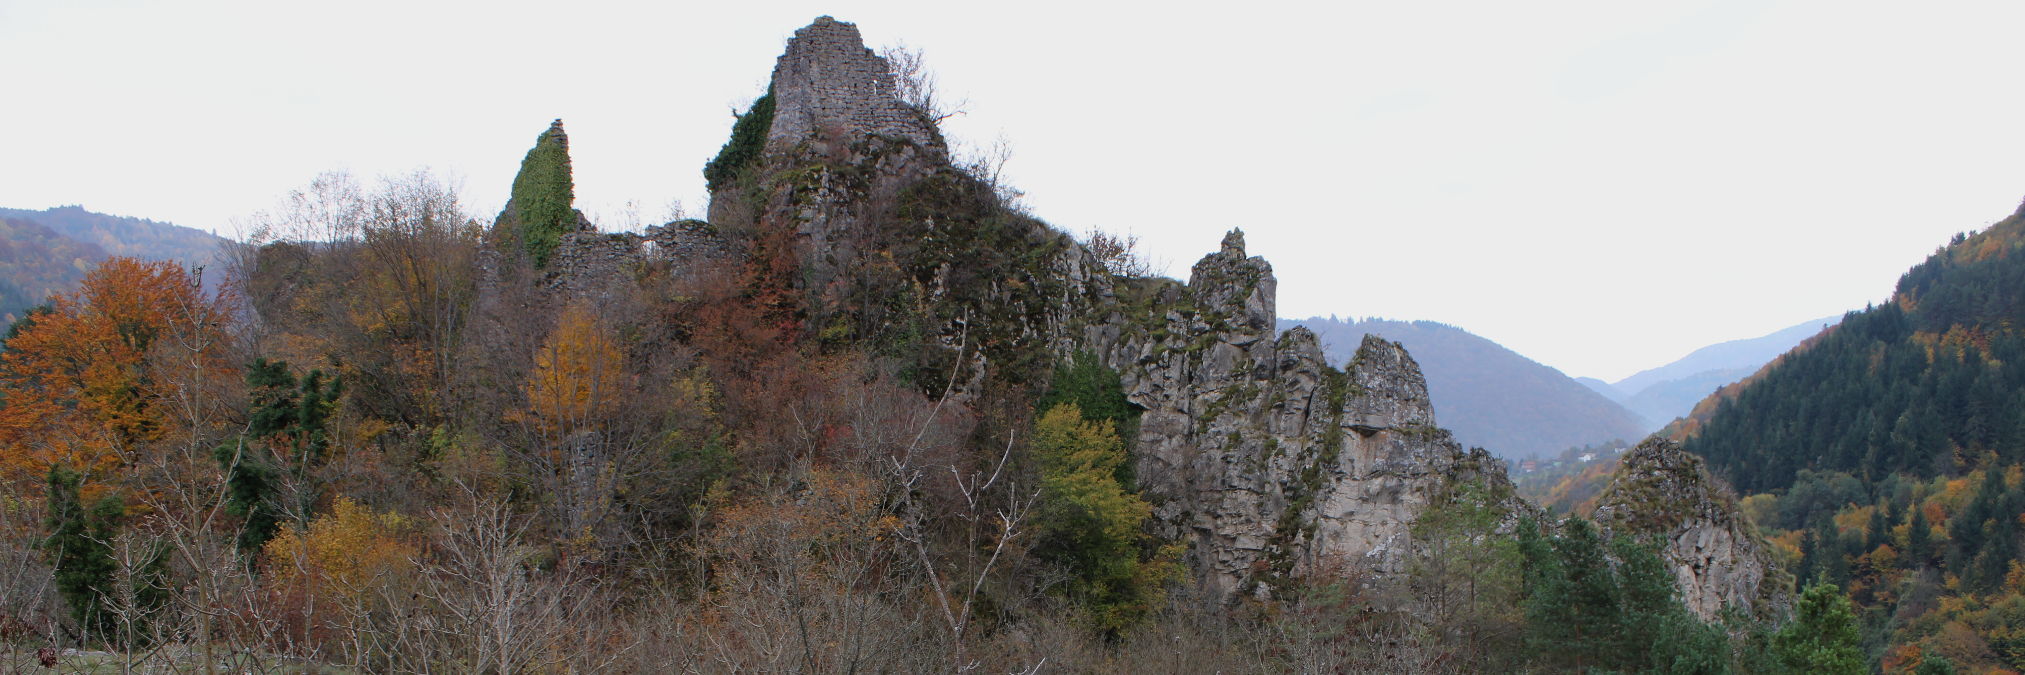 Крепость Винац